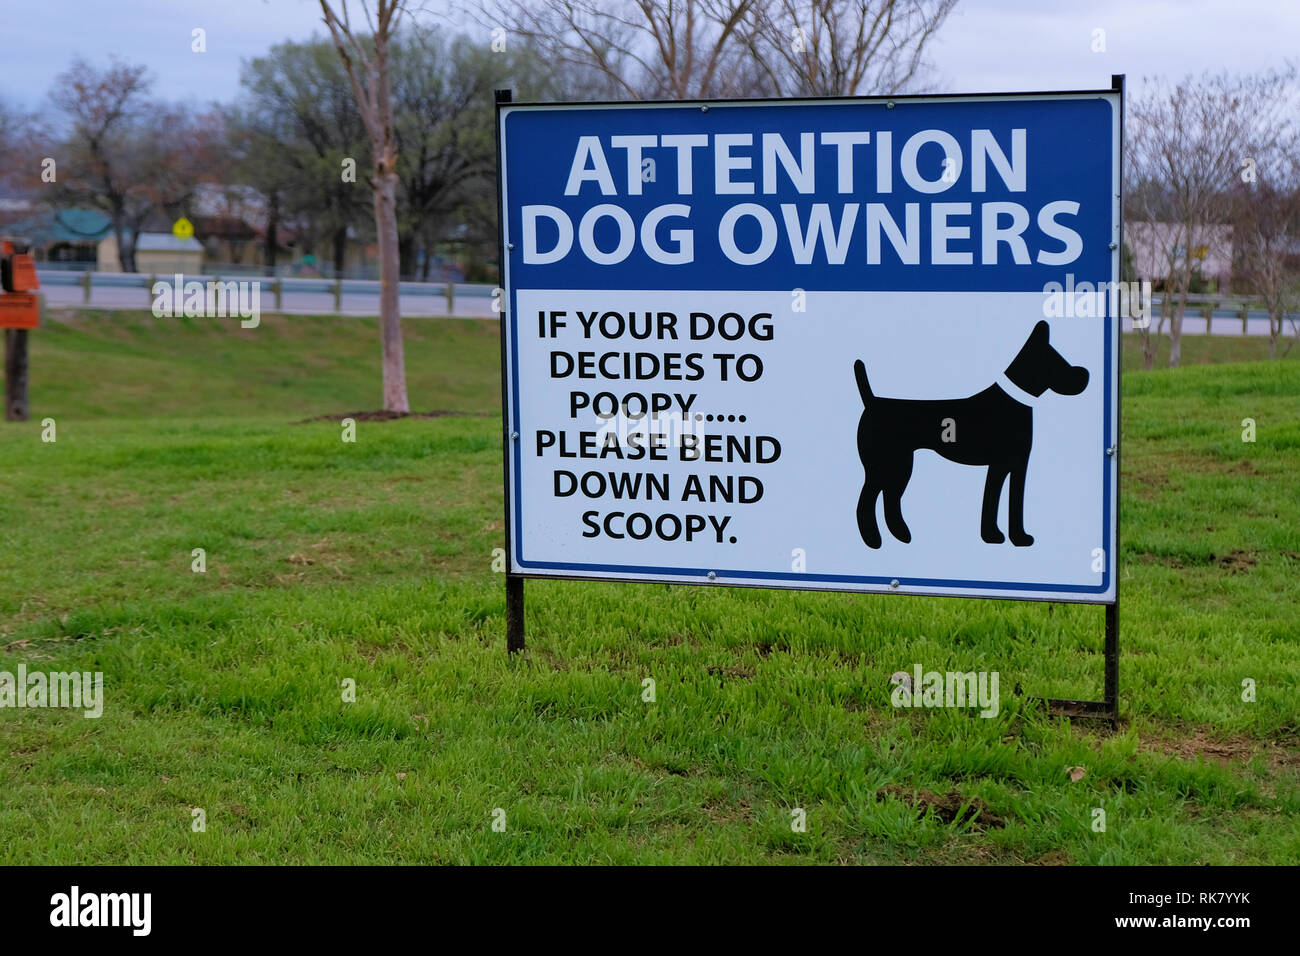 Firmare la richiesta di proprietari di cani pulizia dopo il loro pet: "Attenzione i proprietari di cani. Se il vostro cane decide di poopy si prega di piegare verso il basso e scoopy.". Foto Stock